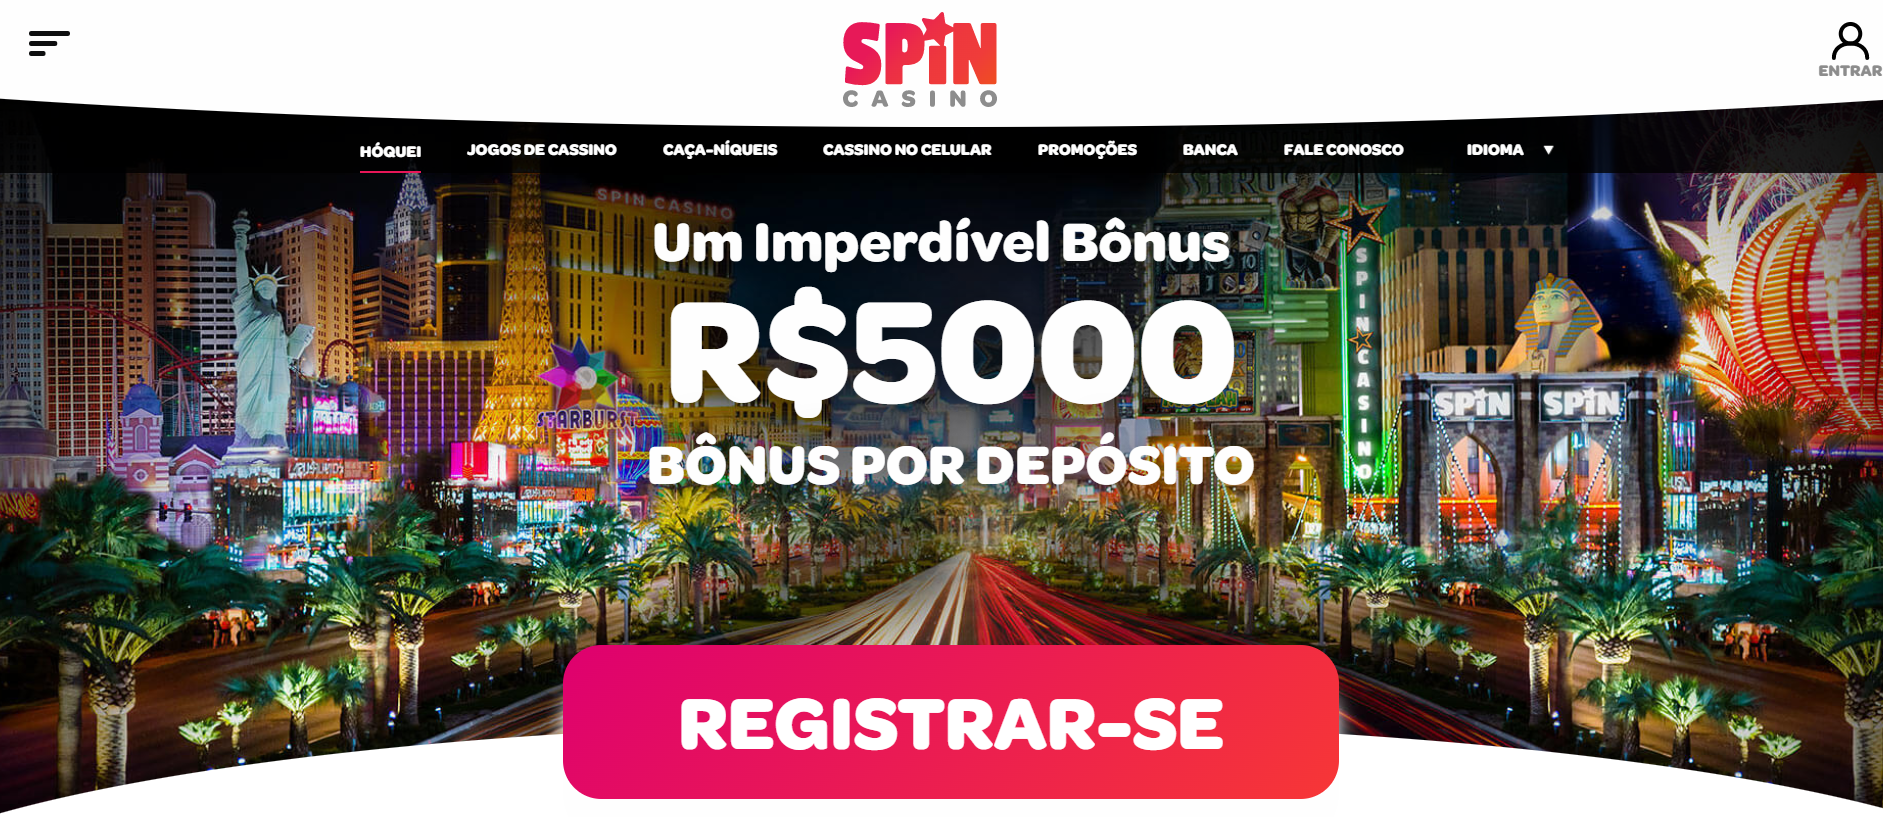 Melhor Casino Spin Casino do Brasil